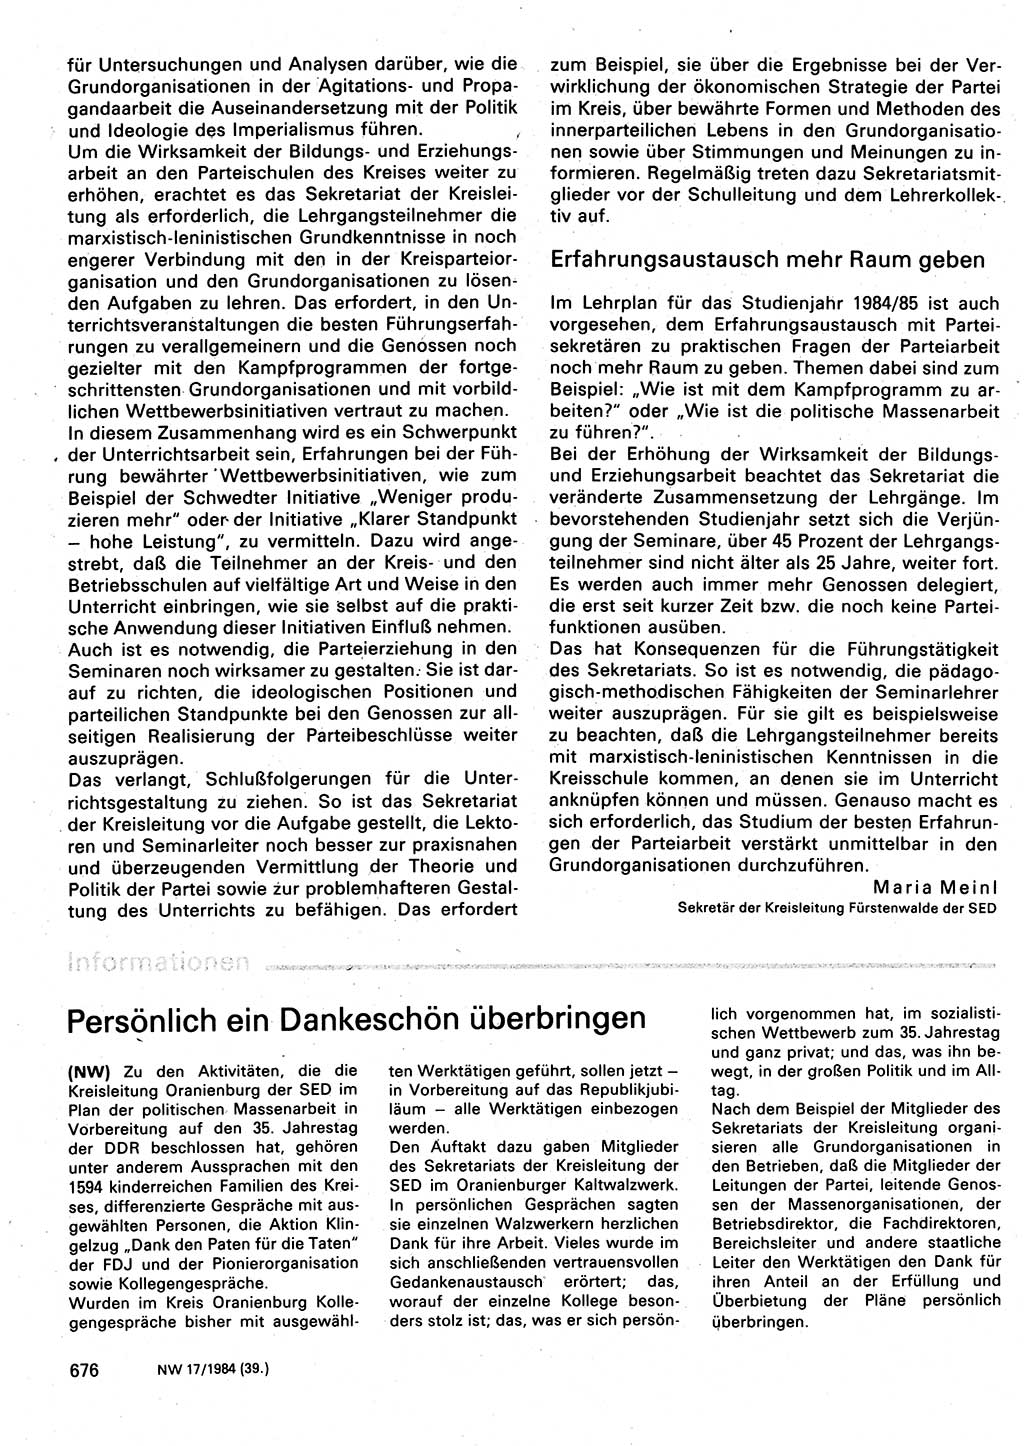 Neuer Weg (NW), Organ des Zentralkomitees (ZK) der SED (Sozialistische Einheitspartei Deutschlands) für Fragen des Parteilebens, 39. Jahrgang [Deutsche Demokratische Republik (DDR)] 1984, Seite 676 (NW ZK SED DDR 1984, S. 676)